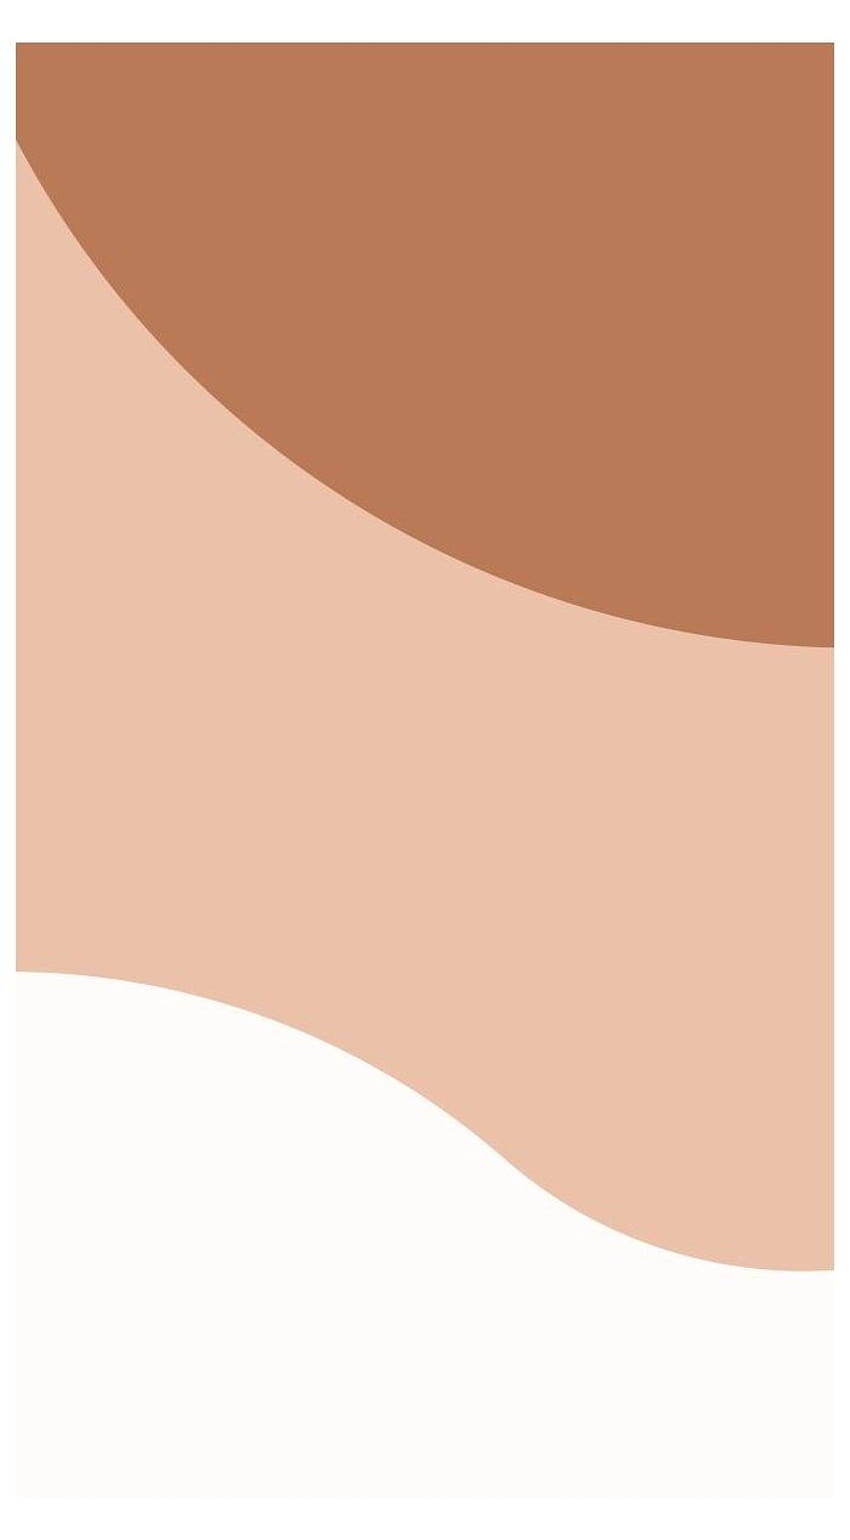 Aesthetic peach + brown in 2021, simple beige aesthetic HD phone wallpaper